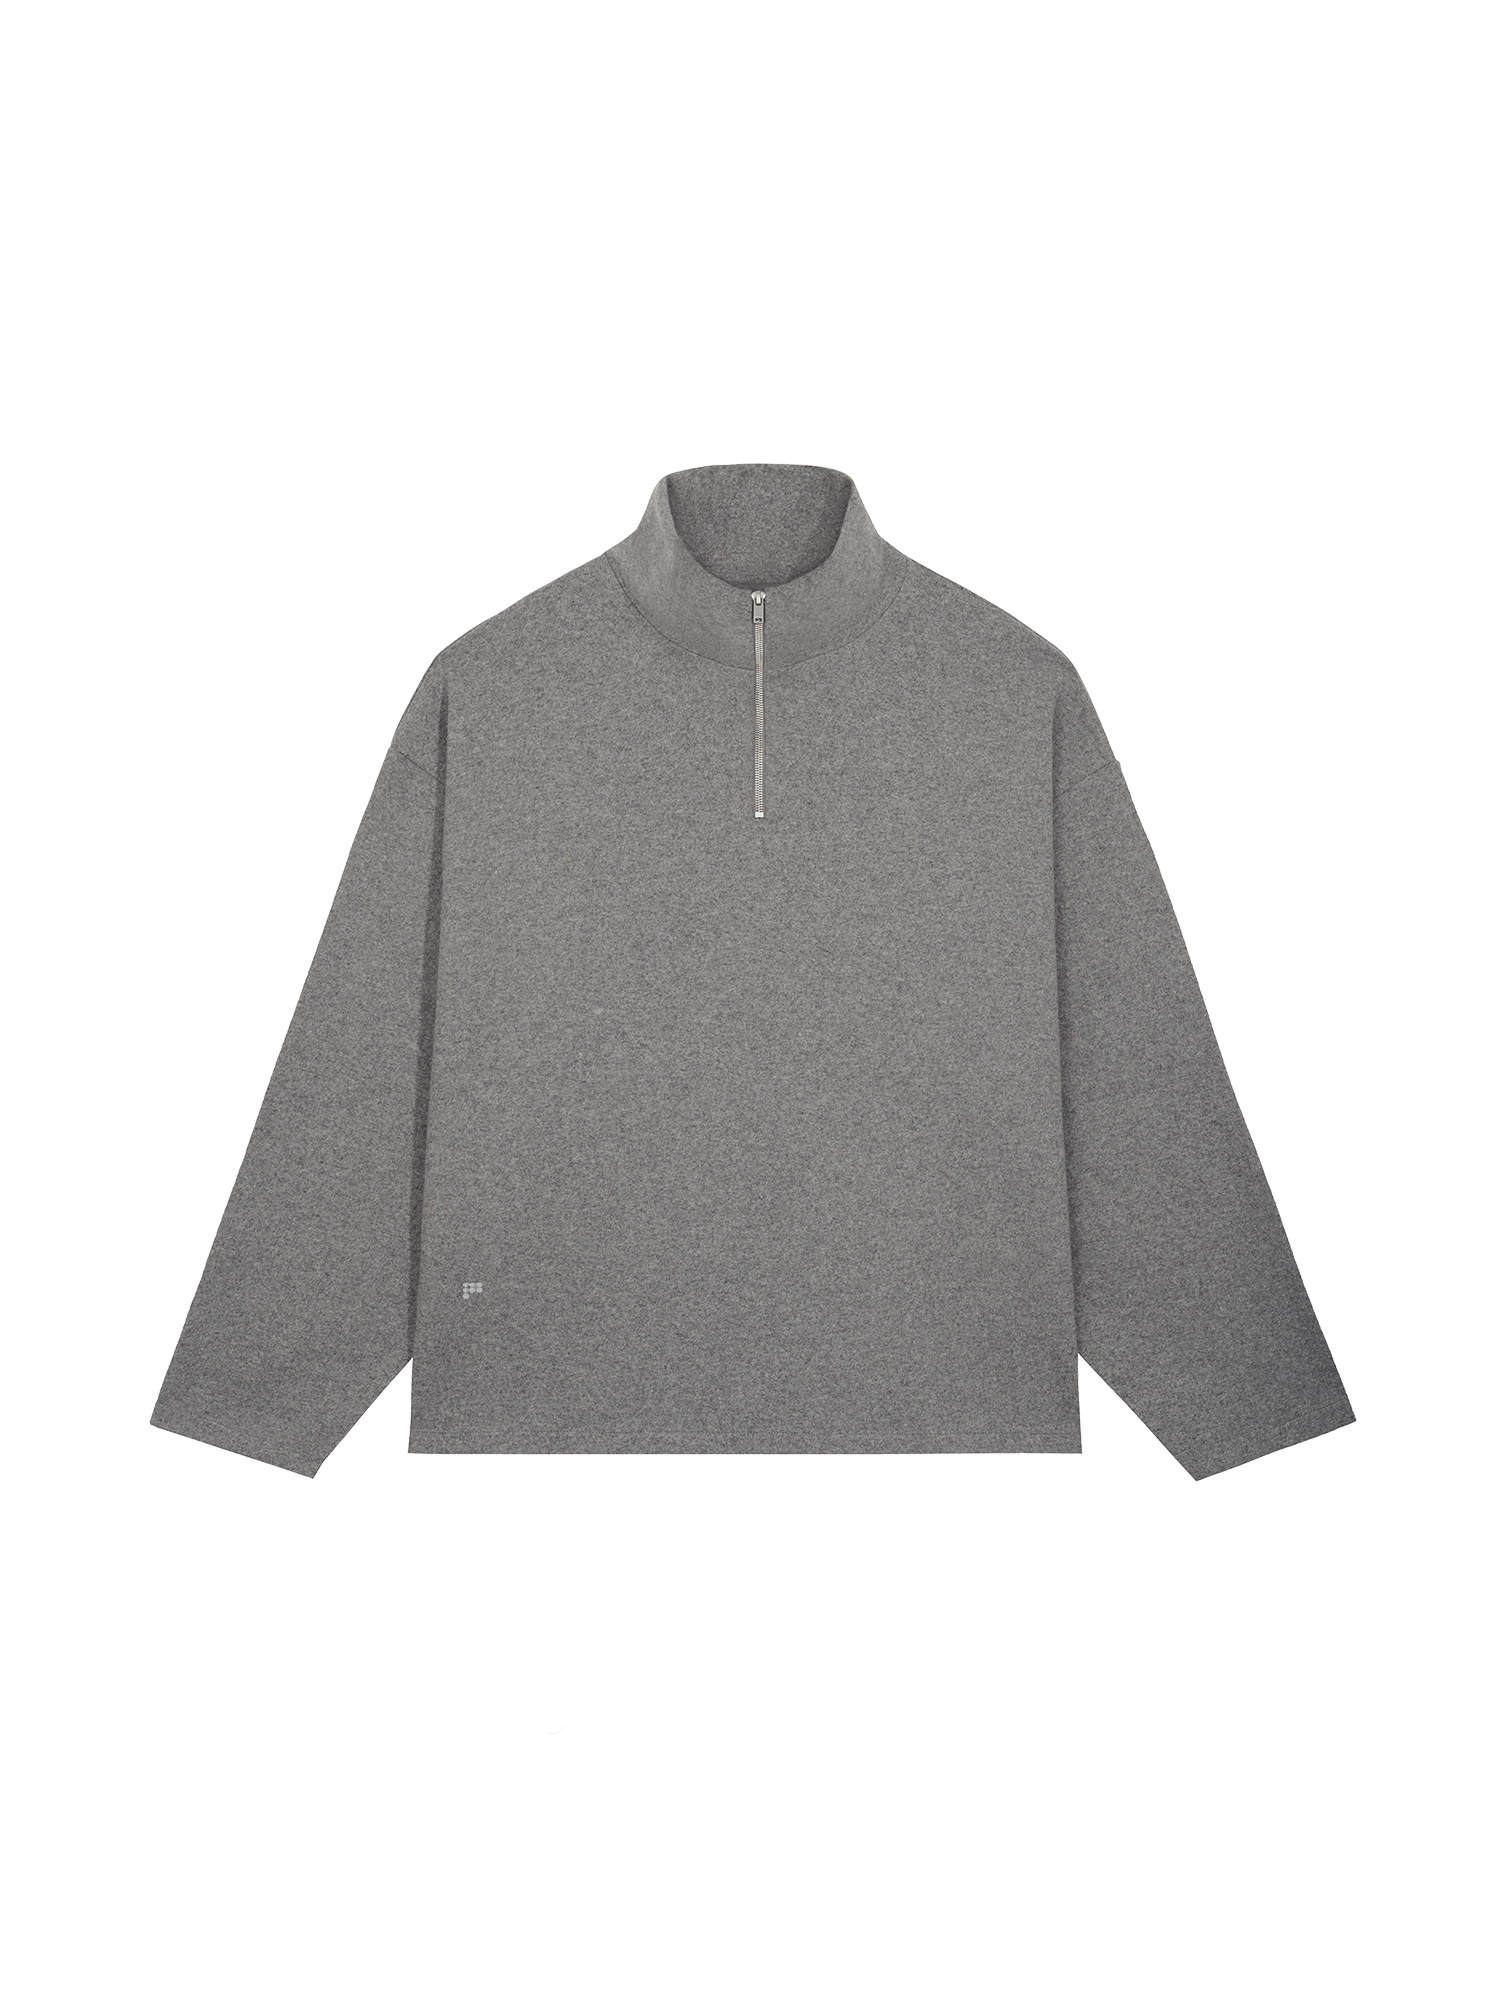 Womens-Wool-Jersey-Half-Zip-Sweatshirt-Volcanic-Grey-packshot-2